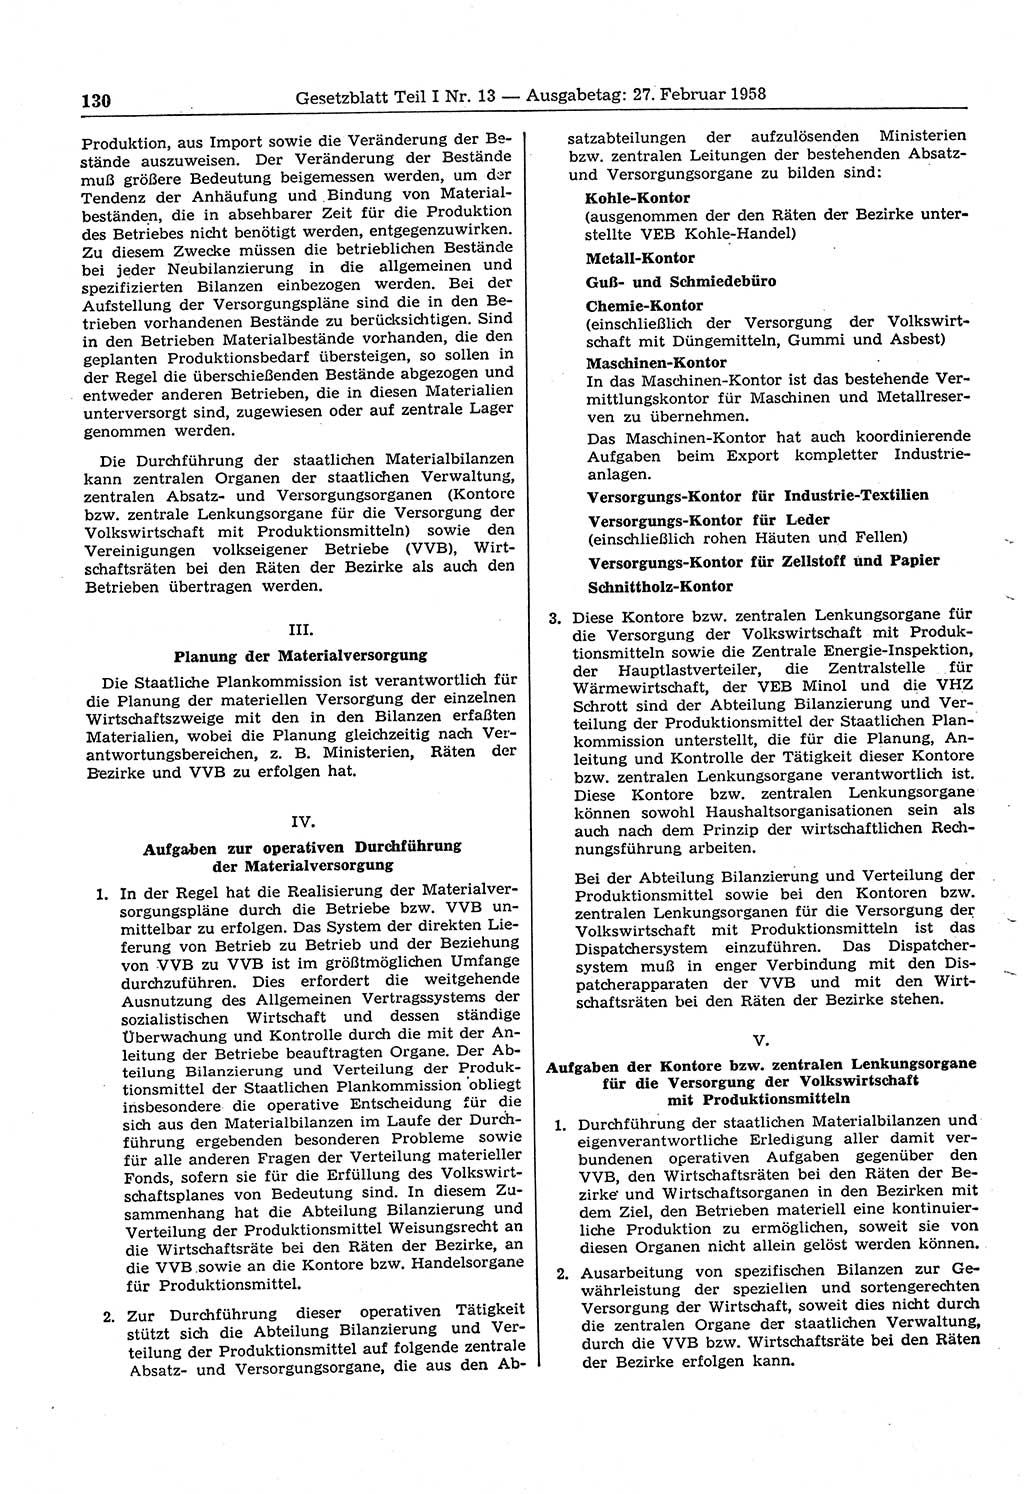 Gesetzblatt (GBl.) der Deutschen Demokratischen Republik (DDR) Teil Ⅰ 1958, Seite 130 (GBl. DDR Ⅰ 1958, S. 130)